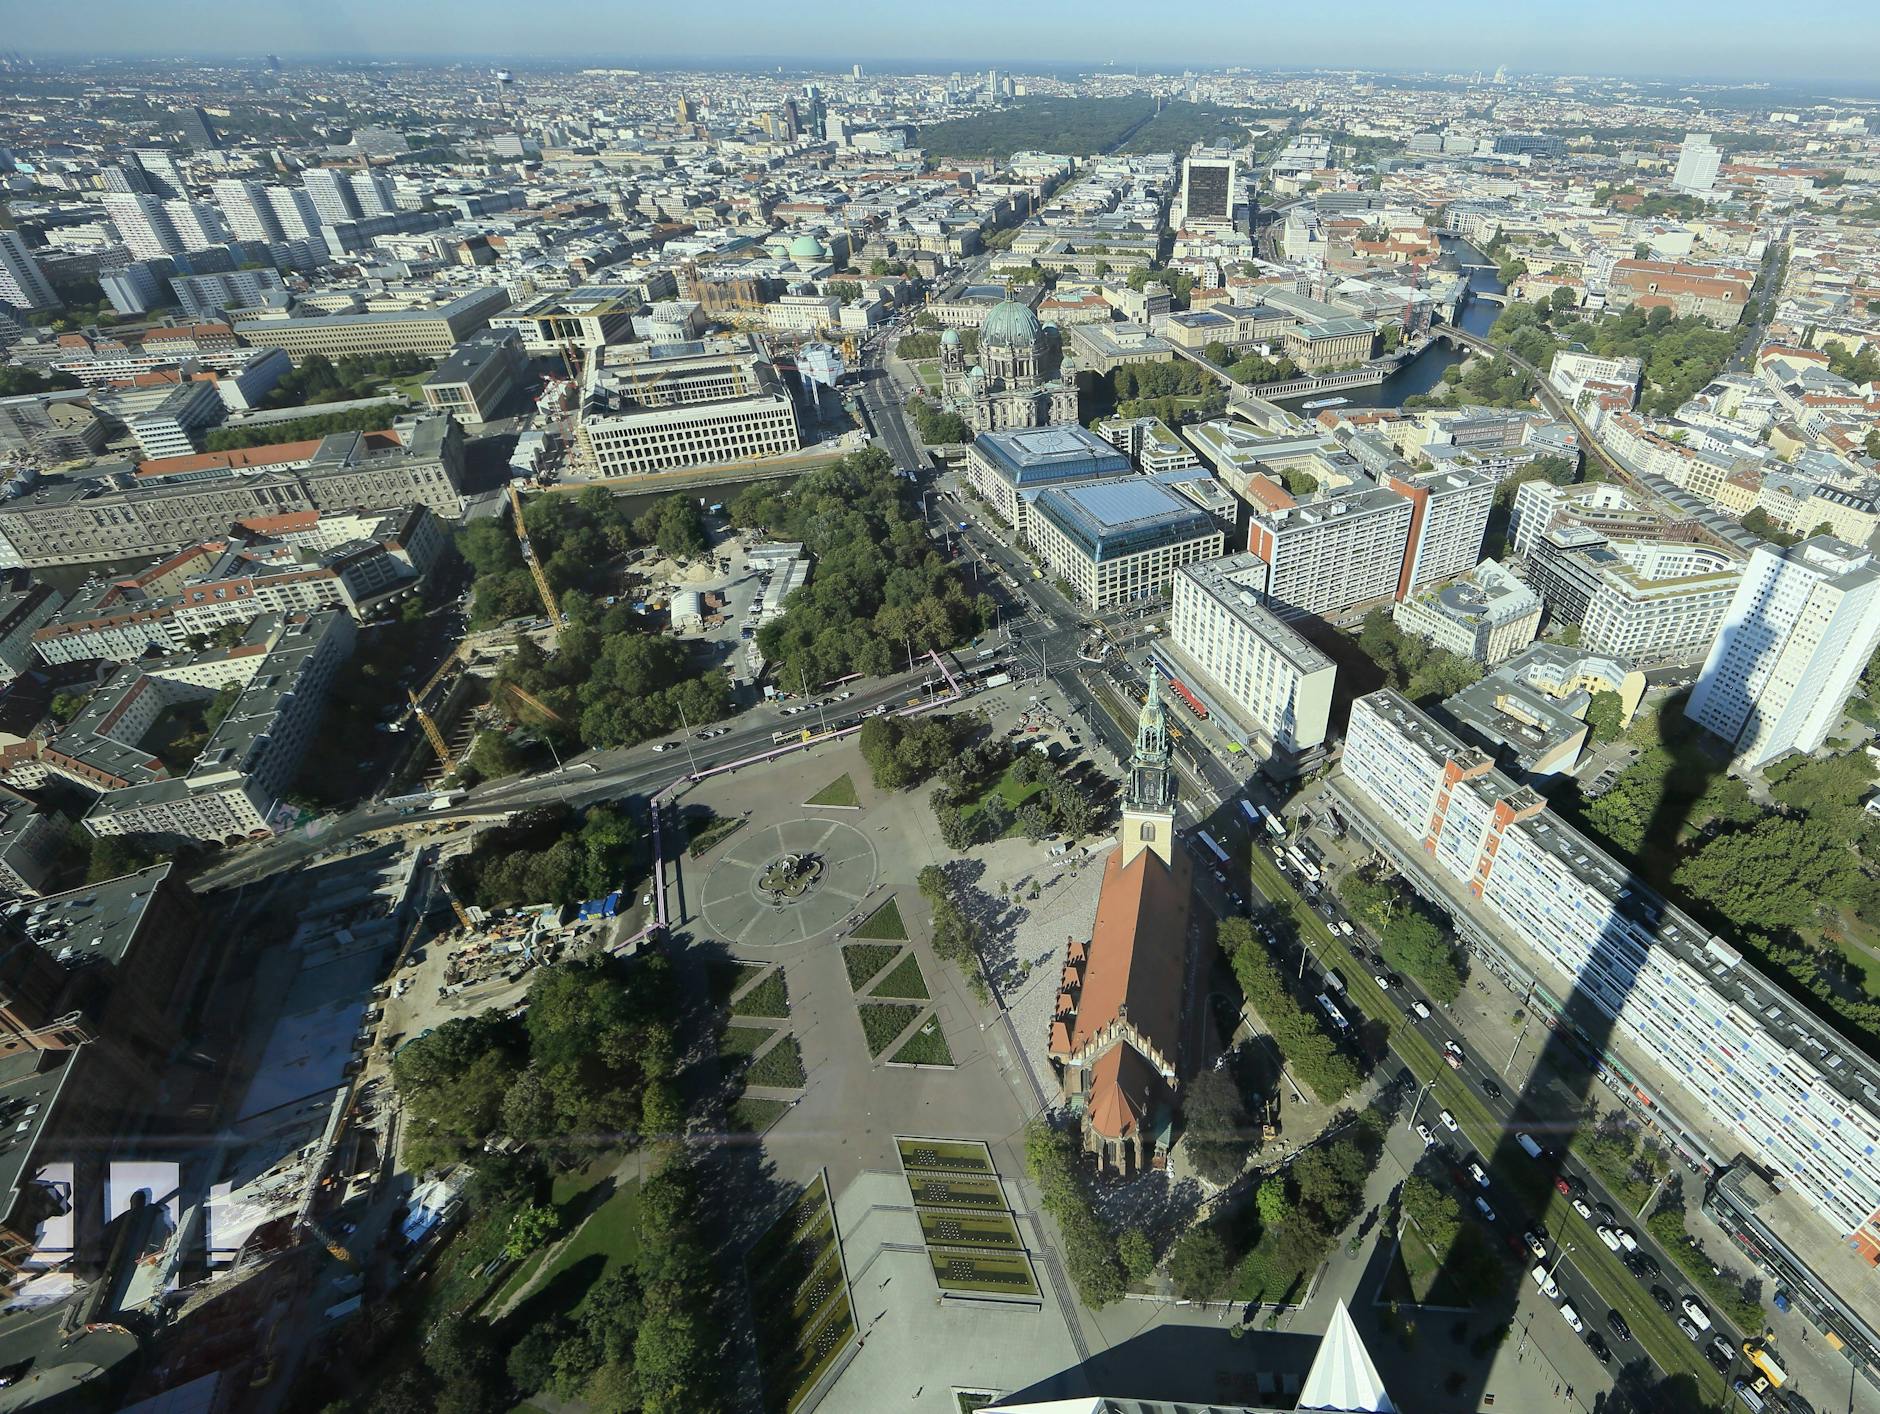 Blick vom Fernsehturm auf das neu zu gestaltende Gebiet Rathausforum und Marx-Engels-Forum. In der Mitte der Neptunbrunnen, dominant die zentrale Achse.